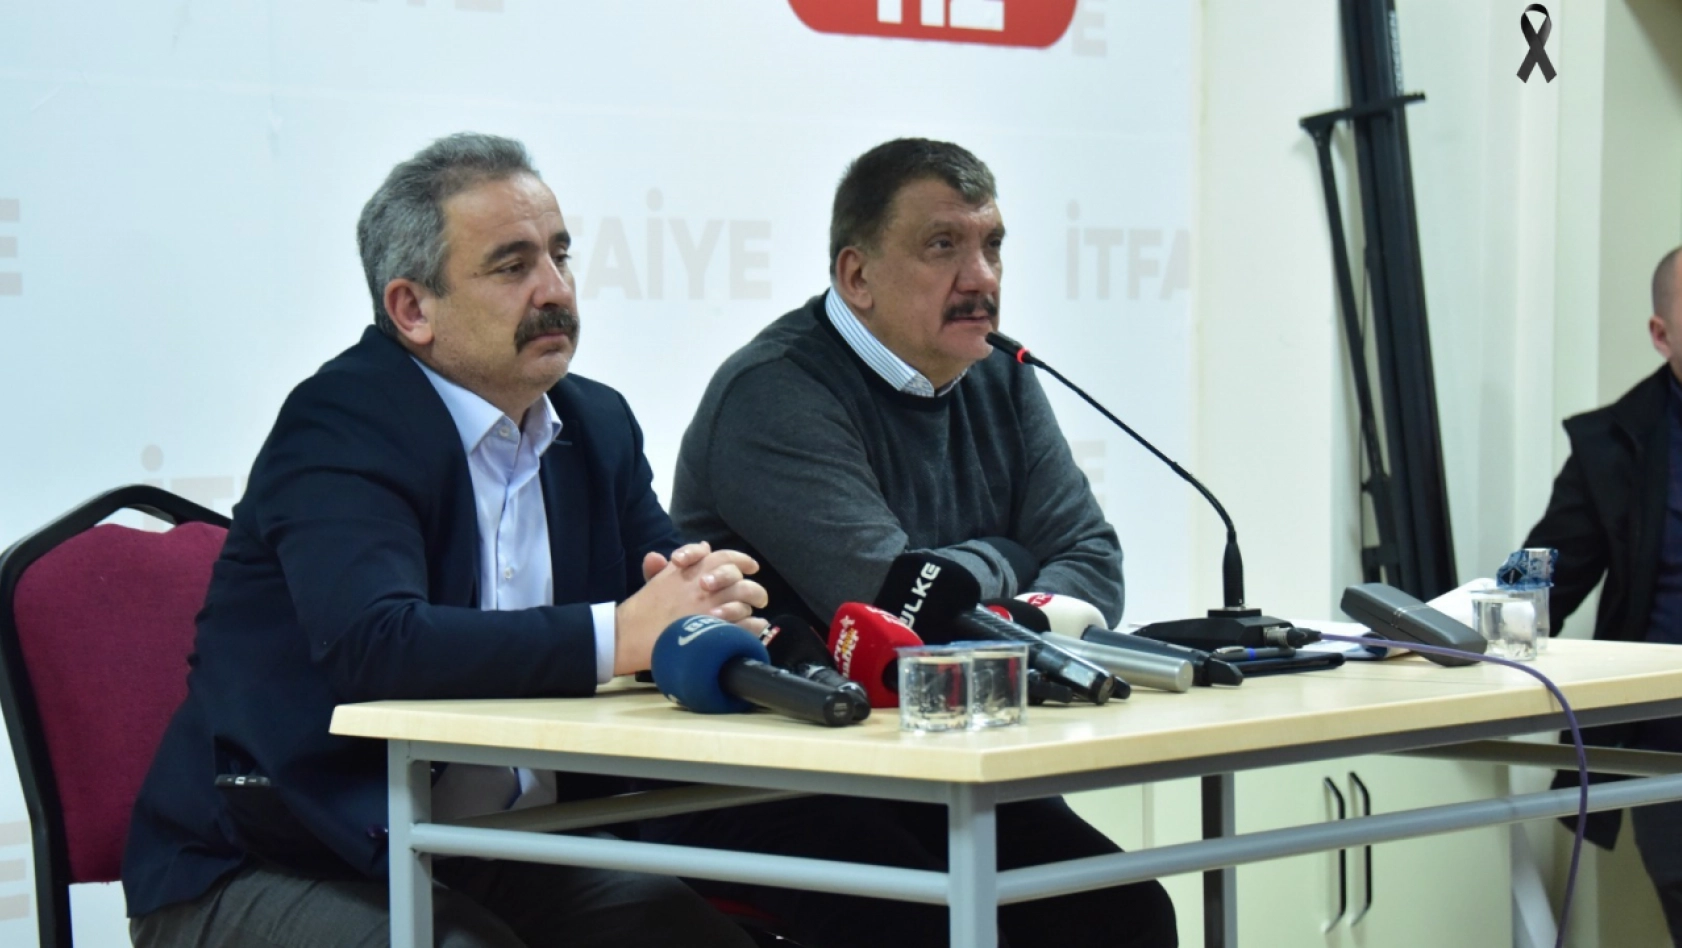 Başkan Gürkan: Birlikteliğimizi siyasi mülahazalara kumpas etmeyelim